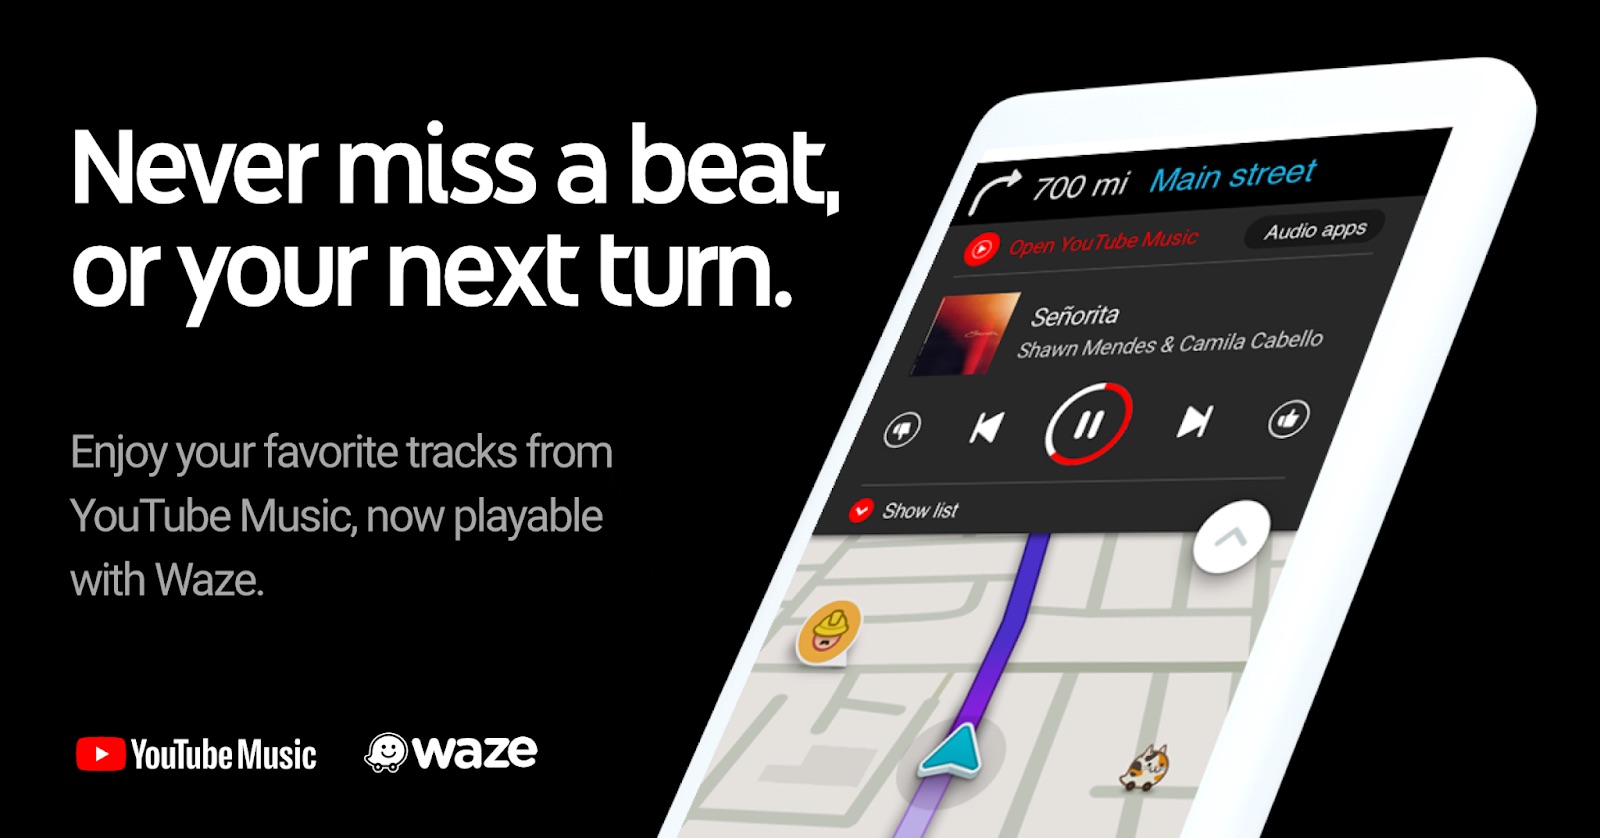 YouTube Музыка теперь доступна в приложении Waze